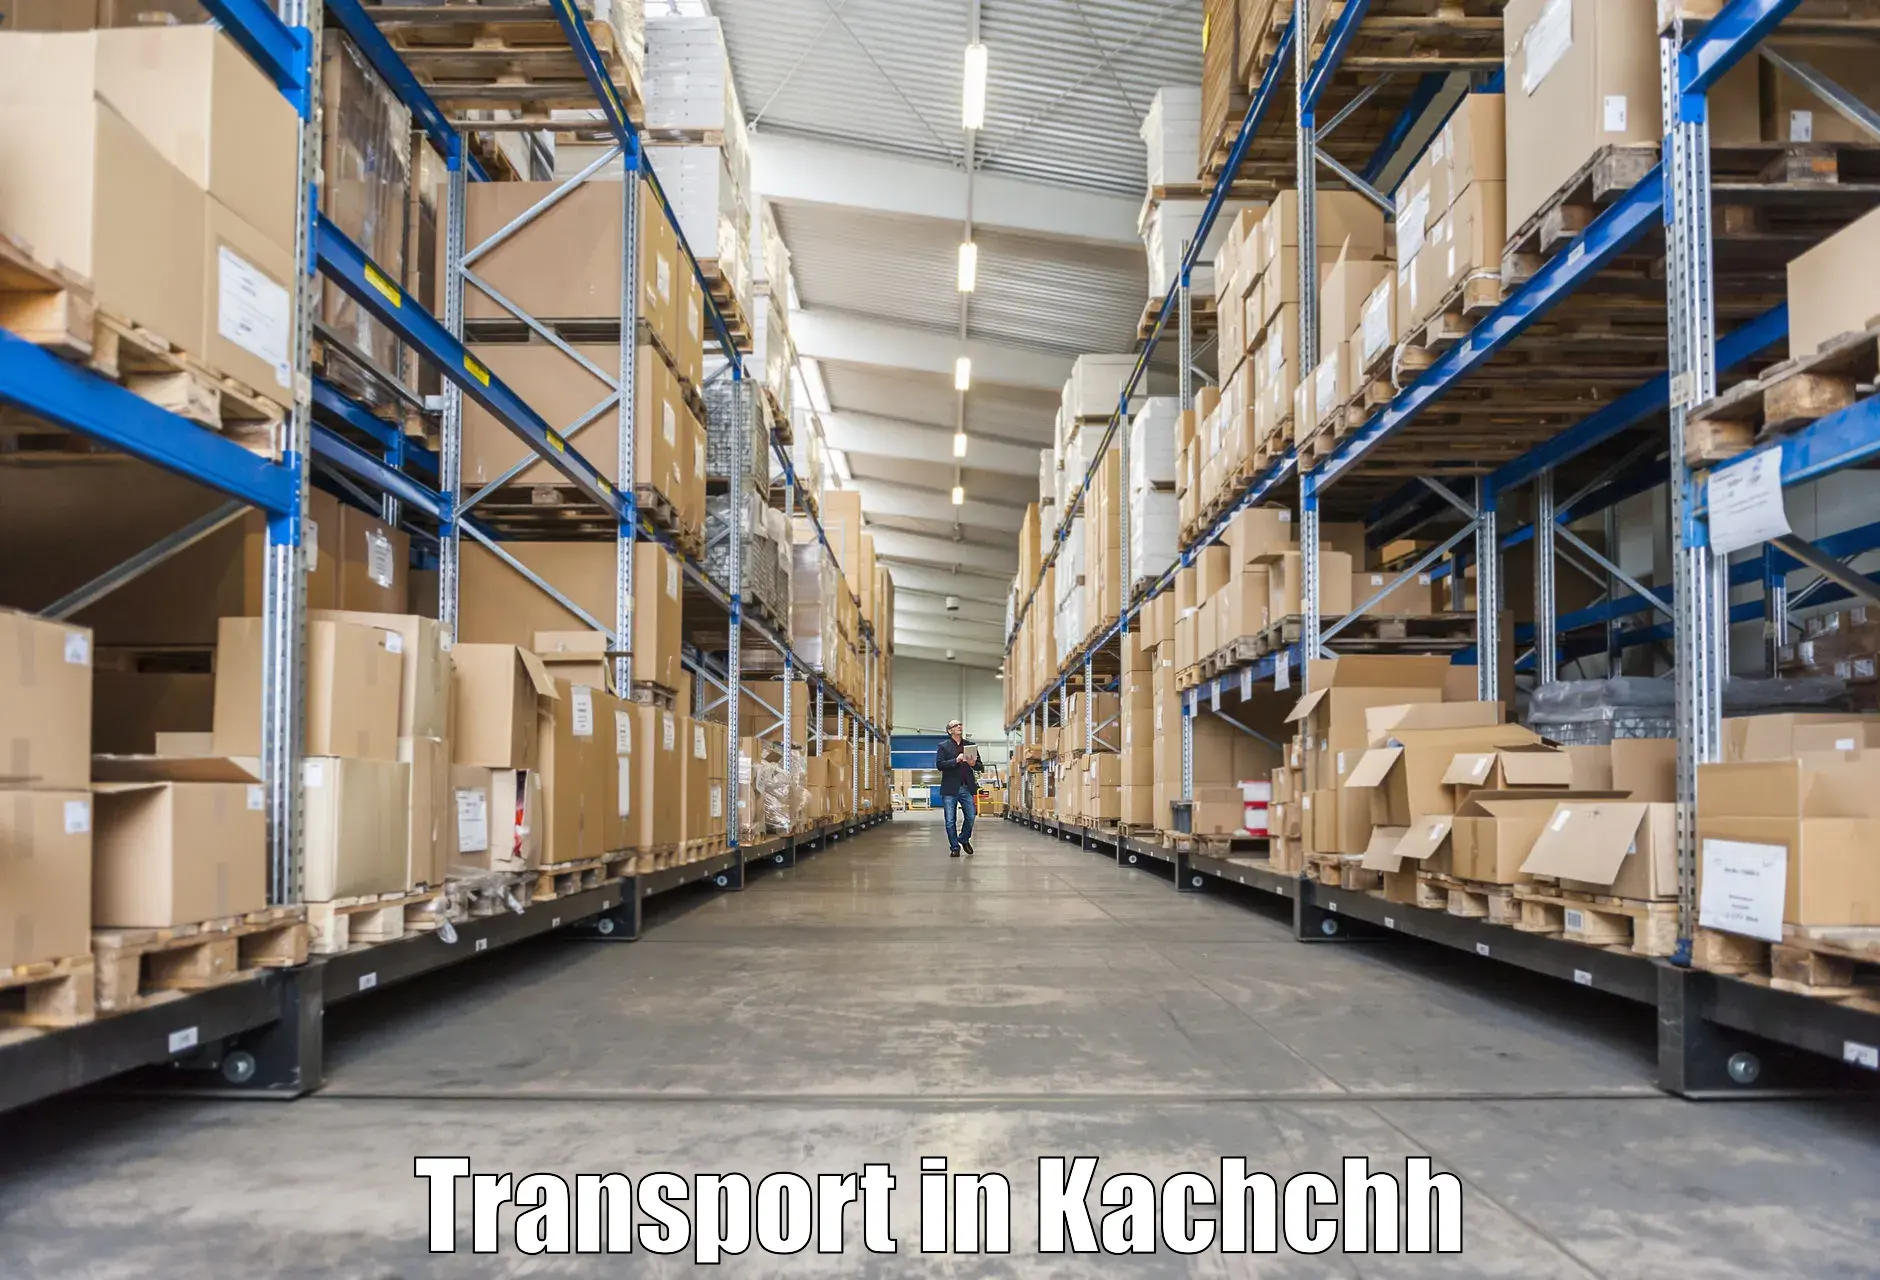 Transport services in Kachchh